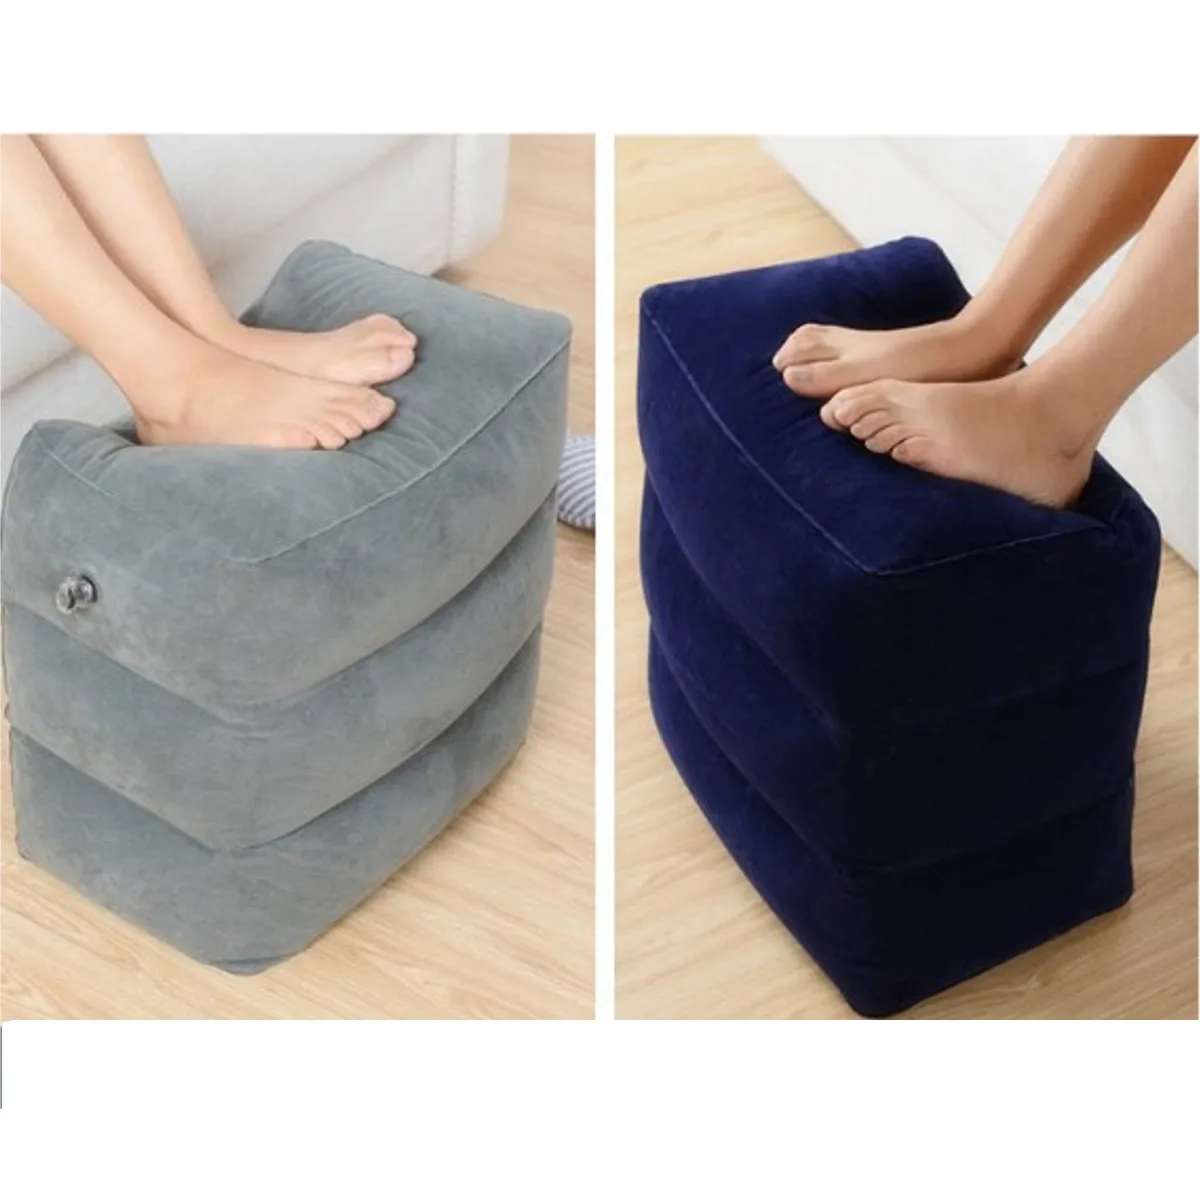 Новейший популярный полезный надувной Портативный Дорожная подставка для ног Подушка для самолета поезда детская кровать коврик для ног 3 цвета